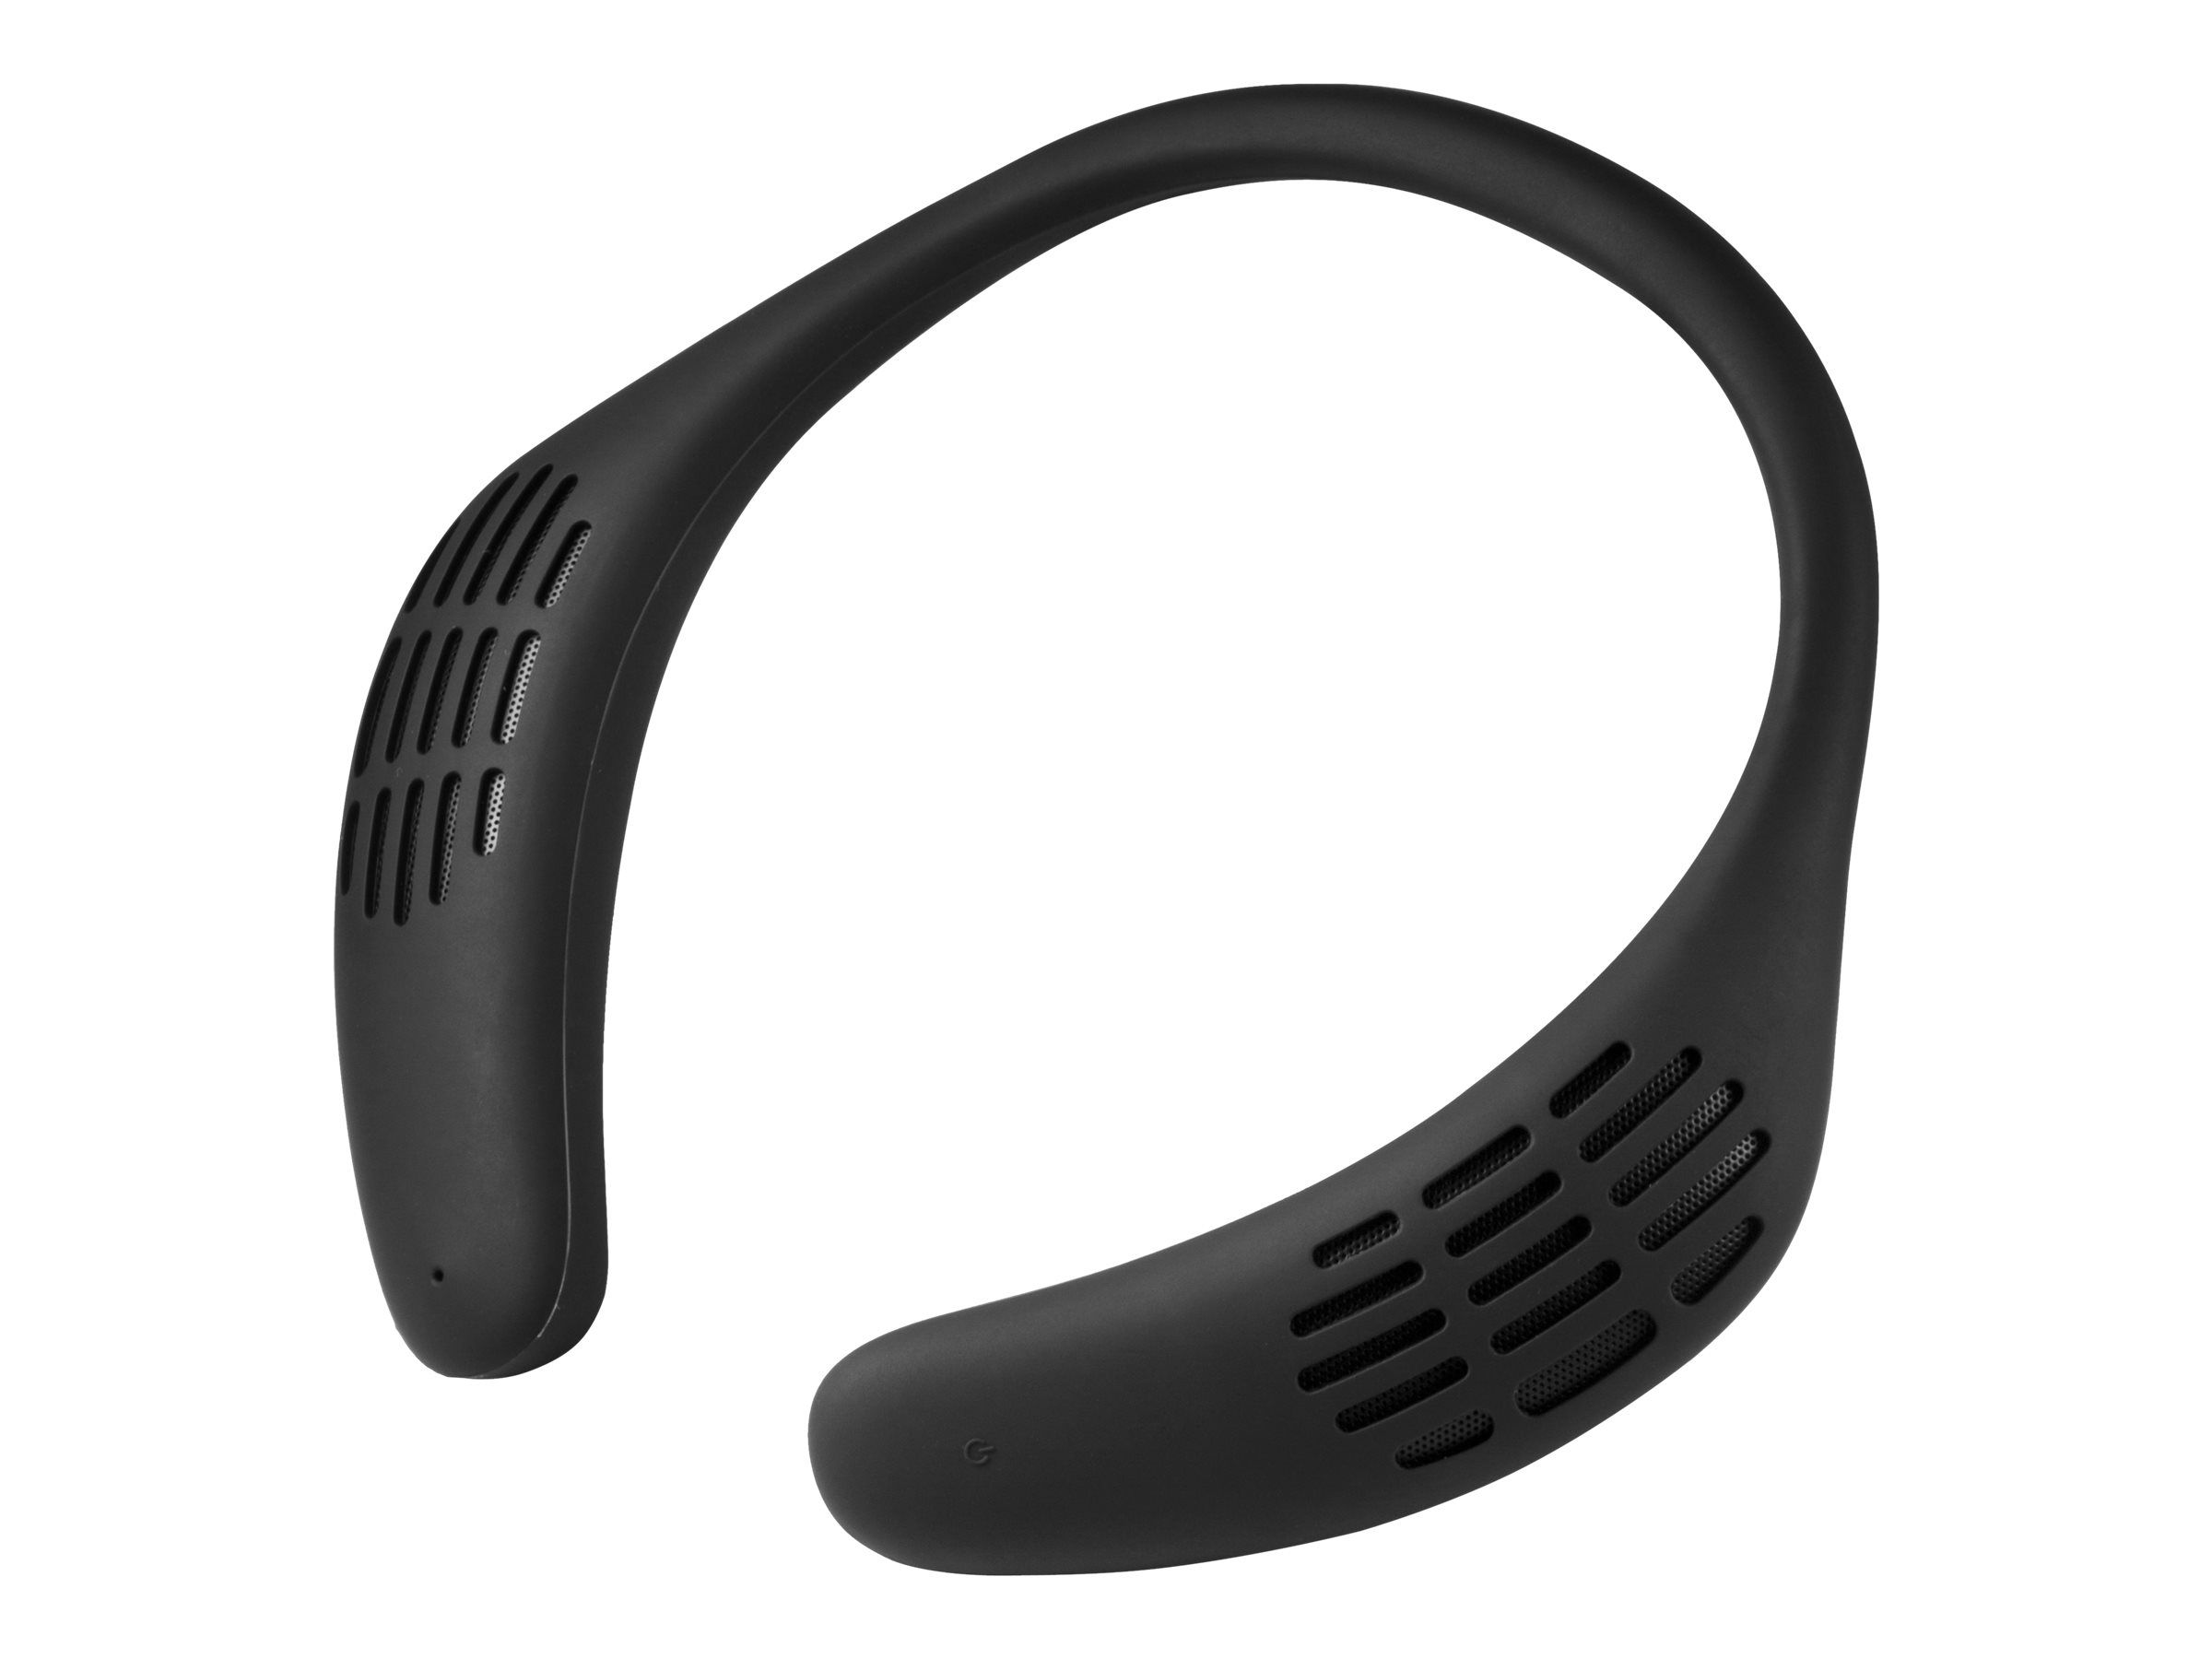 Technaxx MusicMan - Nackenlautsprecher - tragbar - Bluetooth - 6 Watt (Gesamt)